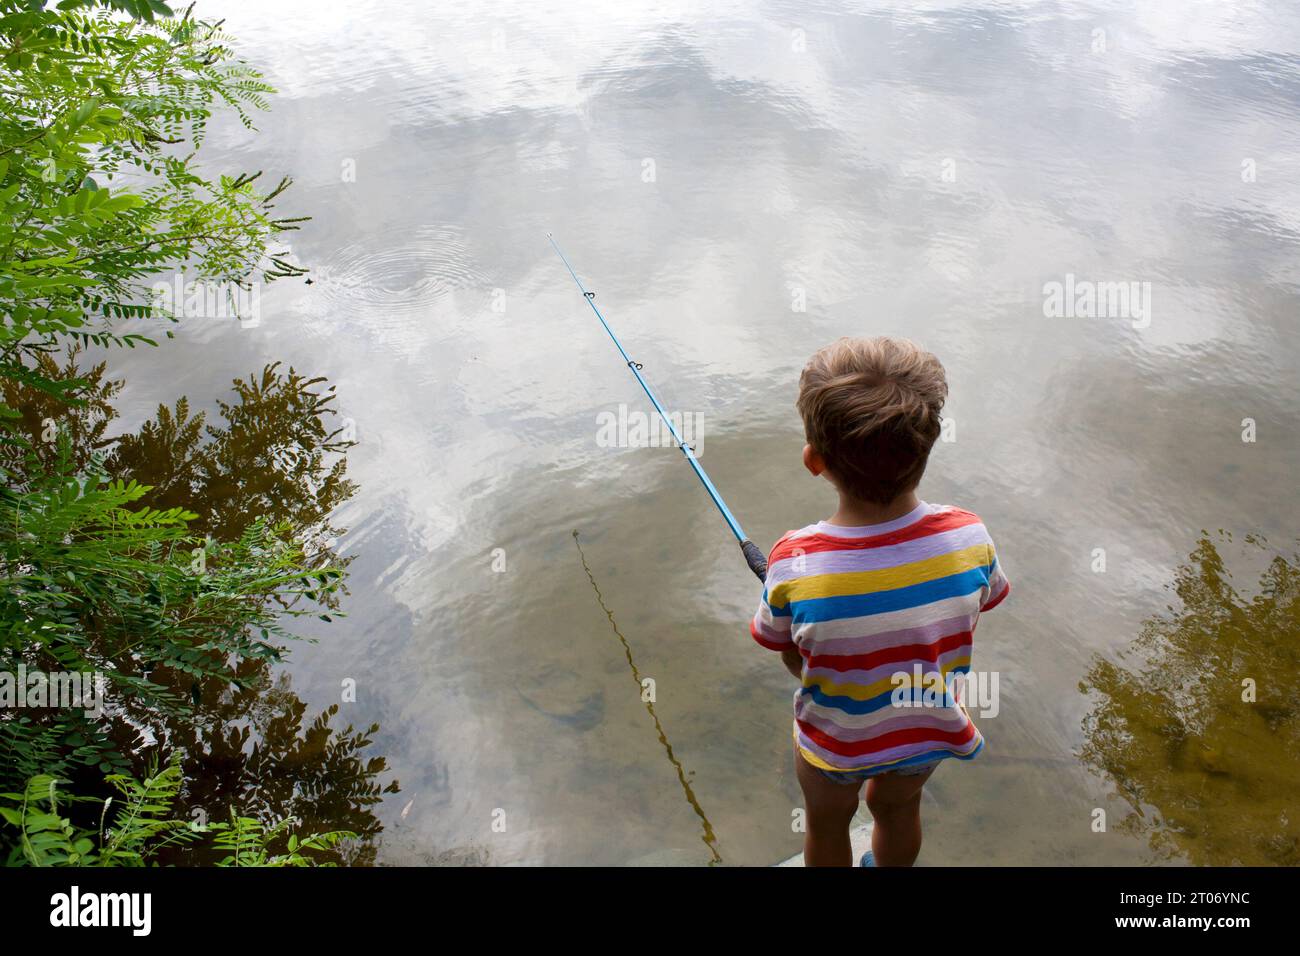 i bambini in età prescolare stanno pescando nel fiume nelle nuvole giornate estive. il ragazzo ha tirato la canna da pesca, sta con la schiena alla macchina fotografica, le nuvole si riflettono nel fiume. Natura Foto Stock